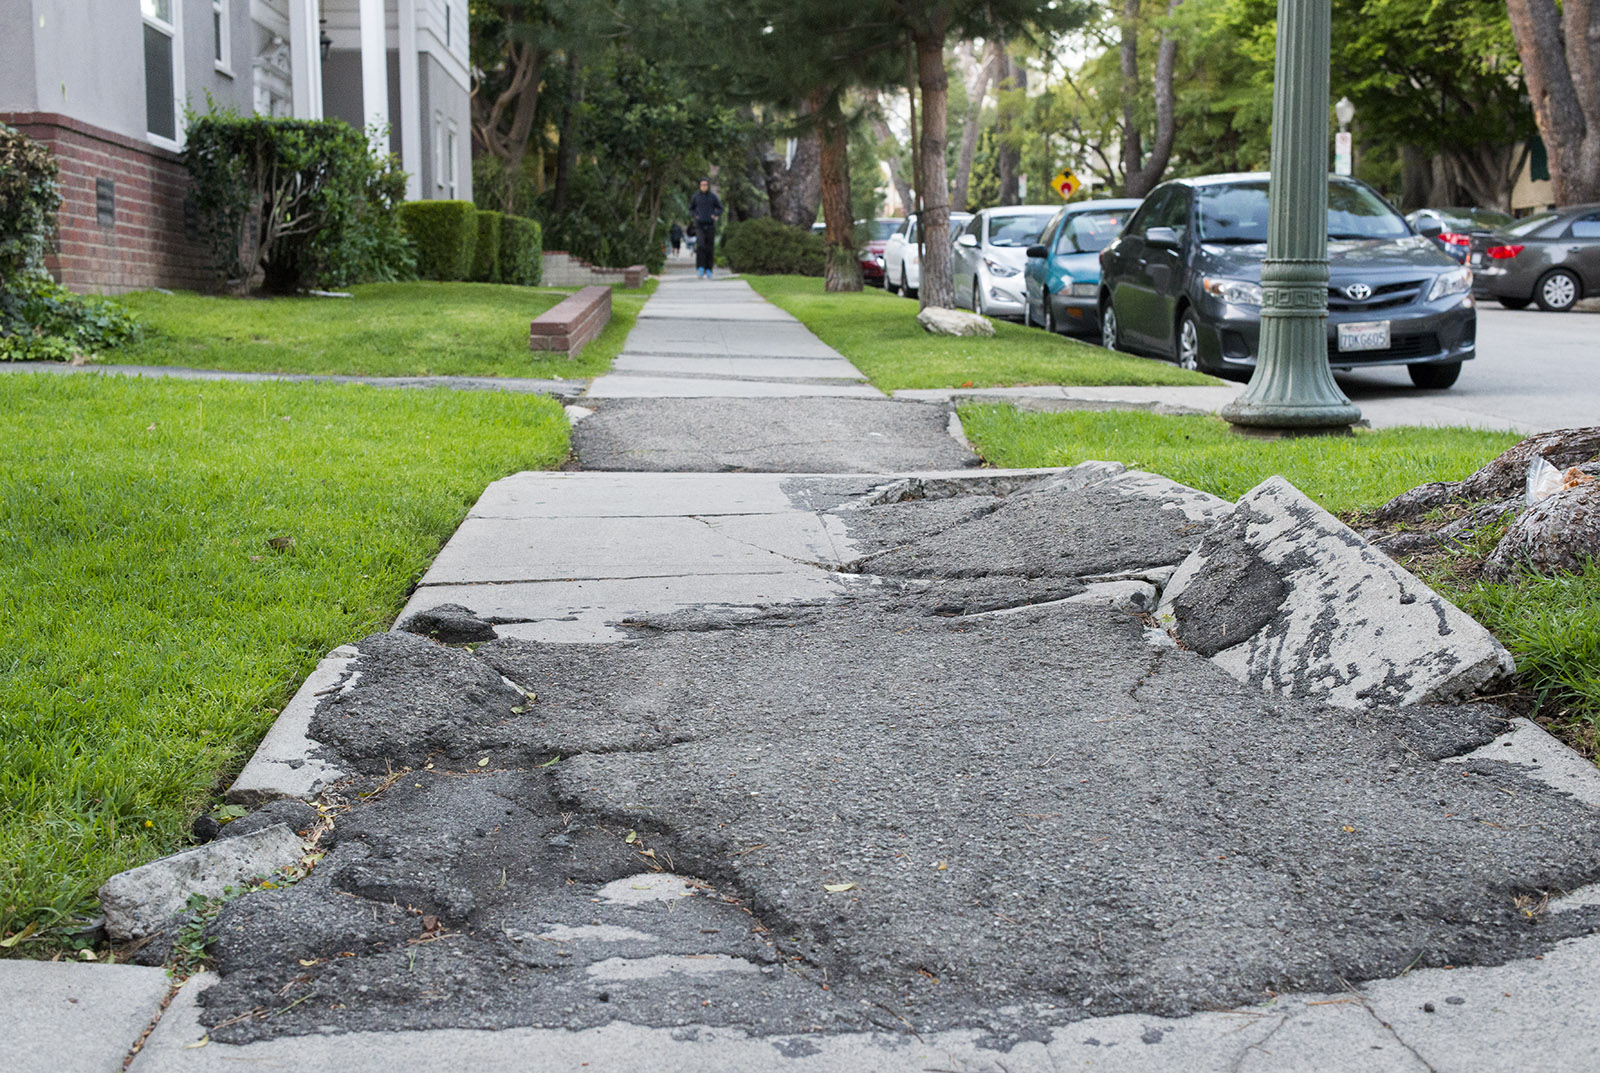 sidewalk-repair-should-cities-consider-raising-over-replacing-frp